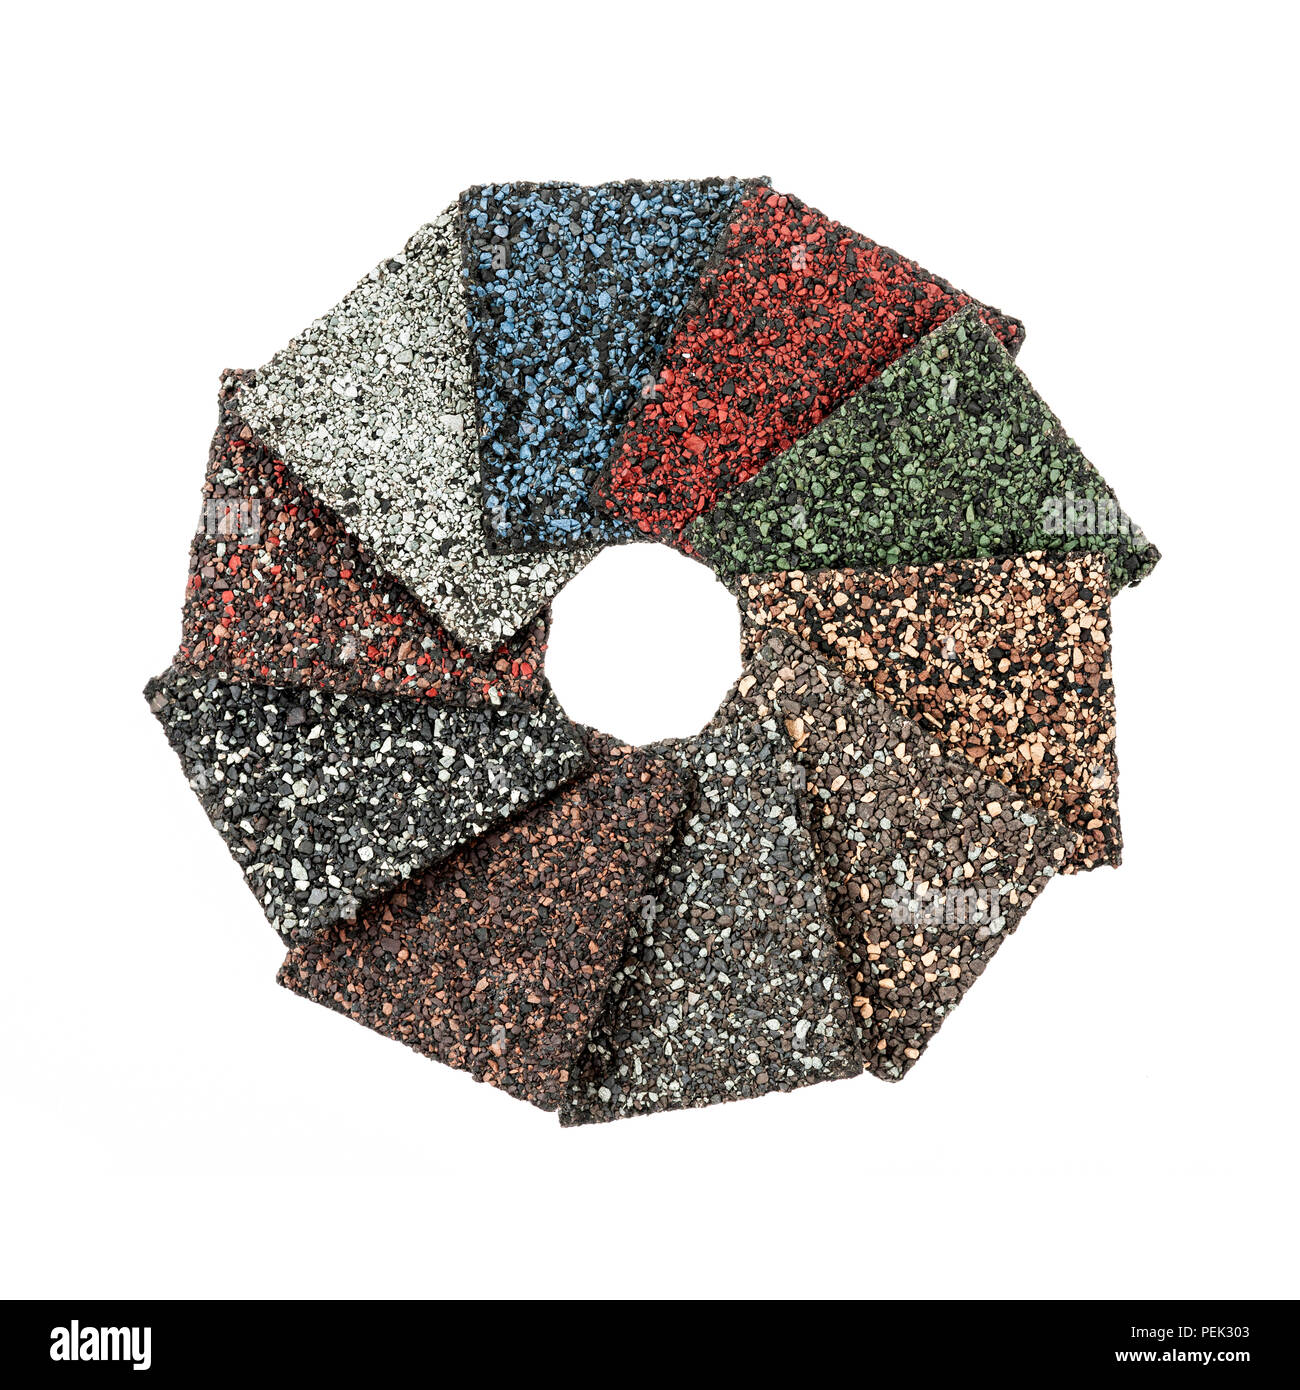 Materiale di copertura con scandole di asfalto di campioni di vari colori isolati su sfondo bianco disposti in cerchio Foto Stock